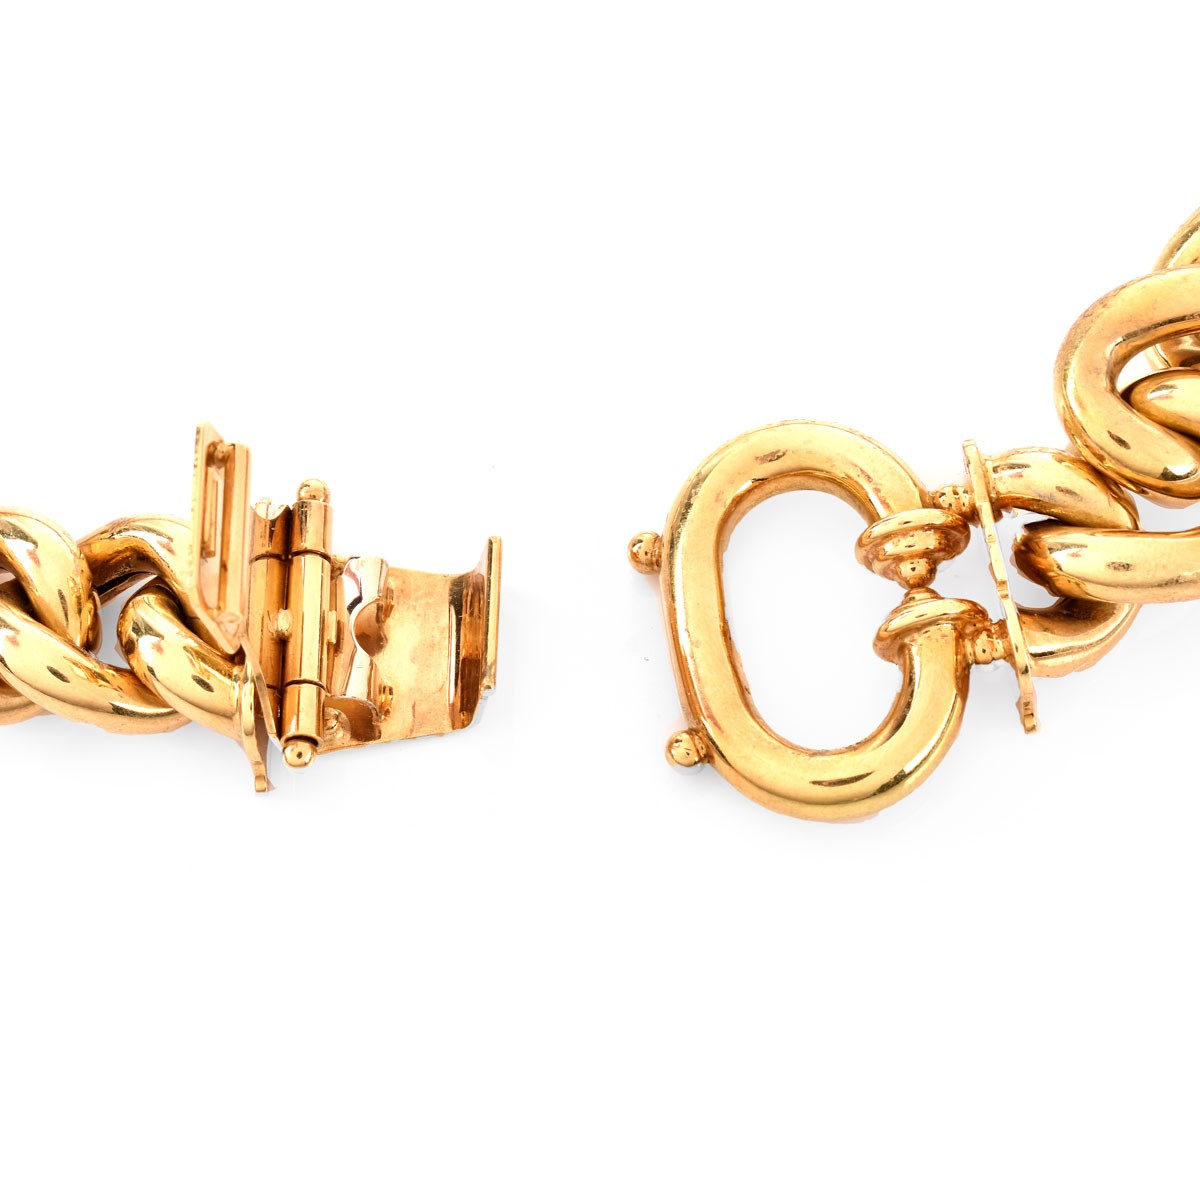 Vintage Italian 18K Gold Link Necklace - Image 4 of 4